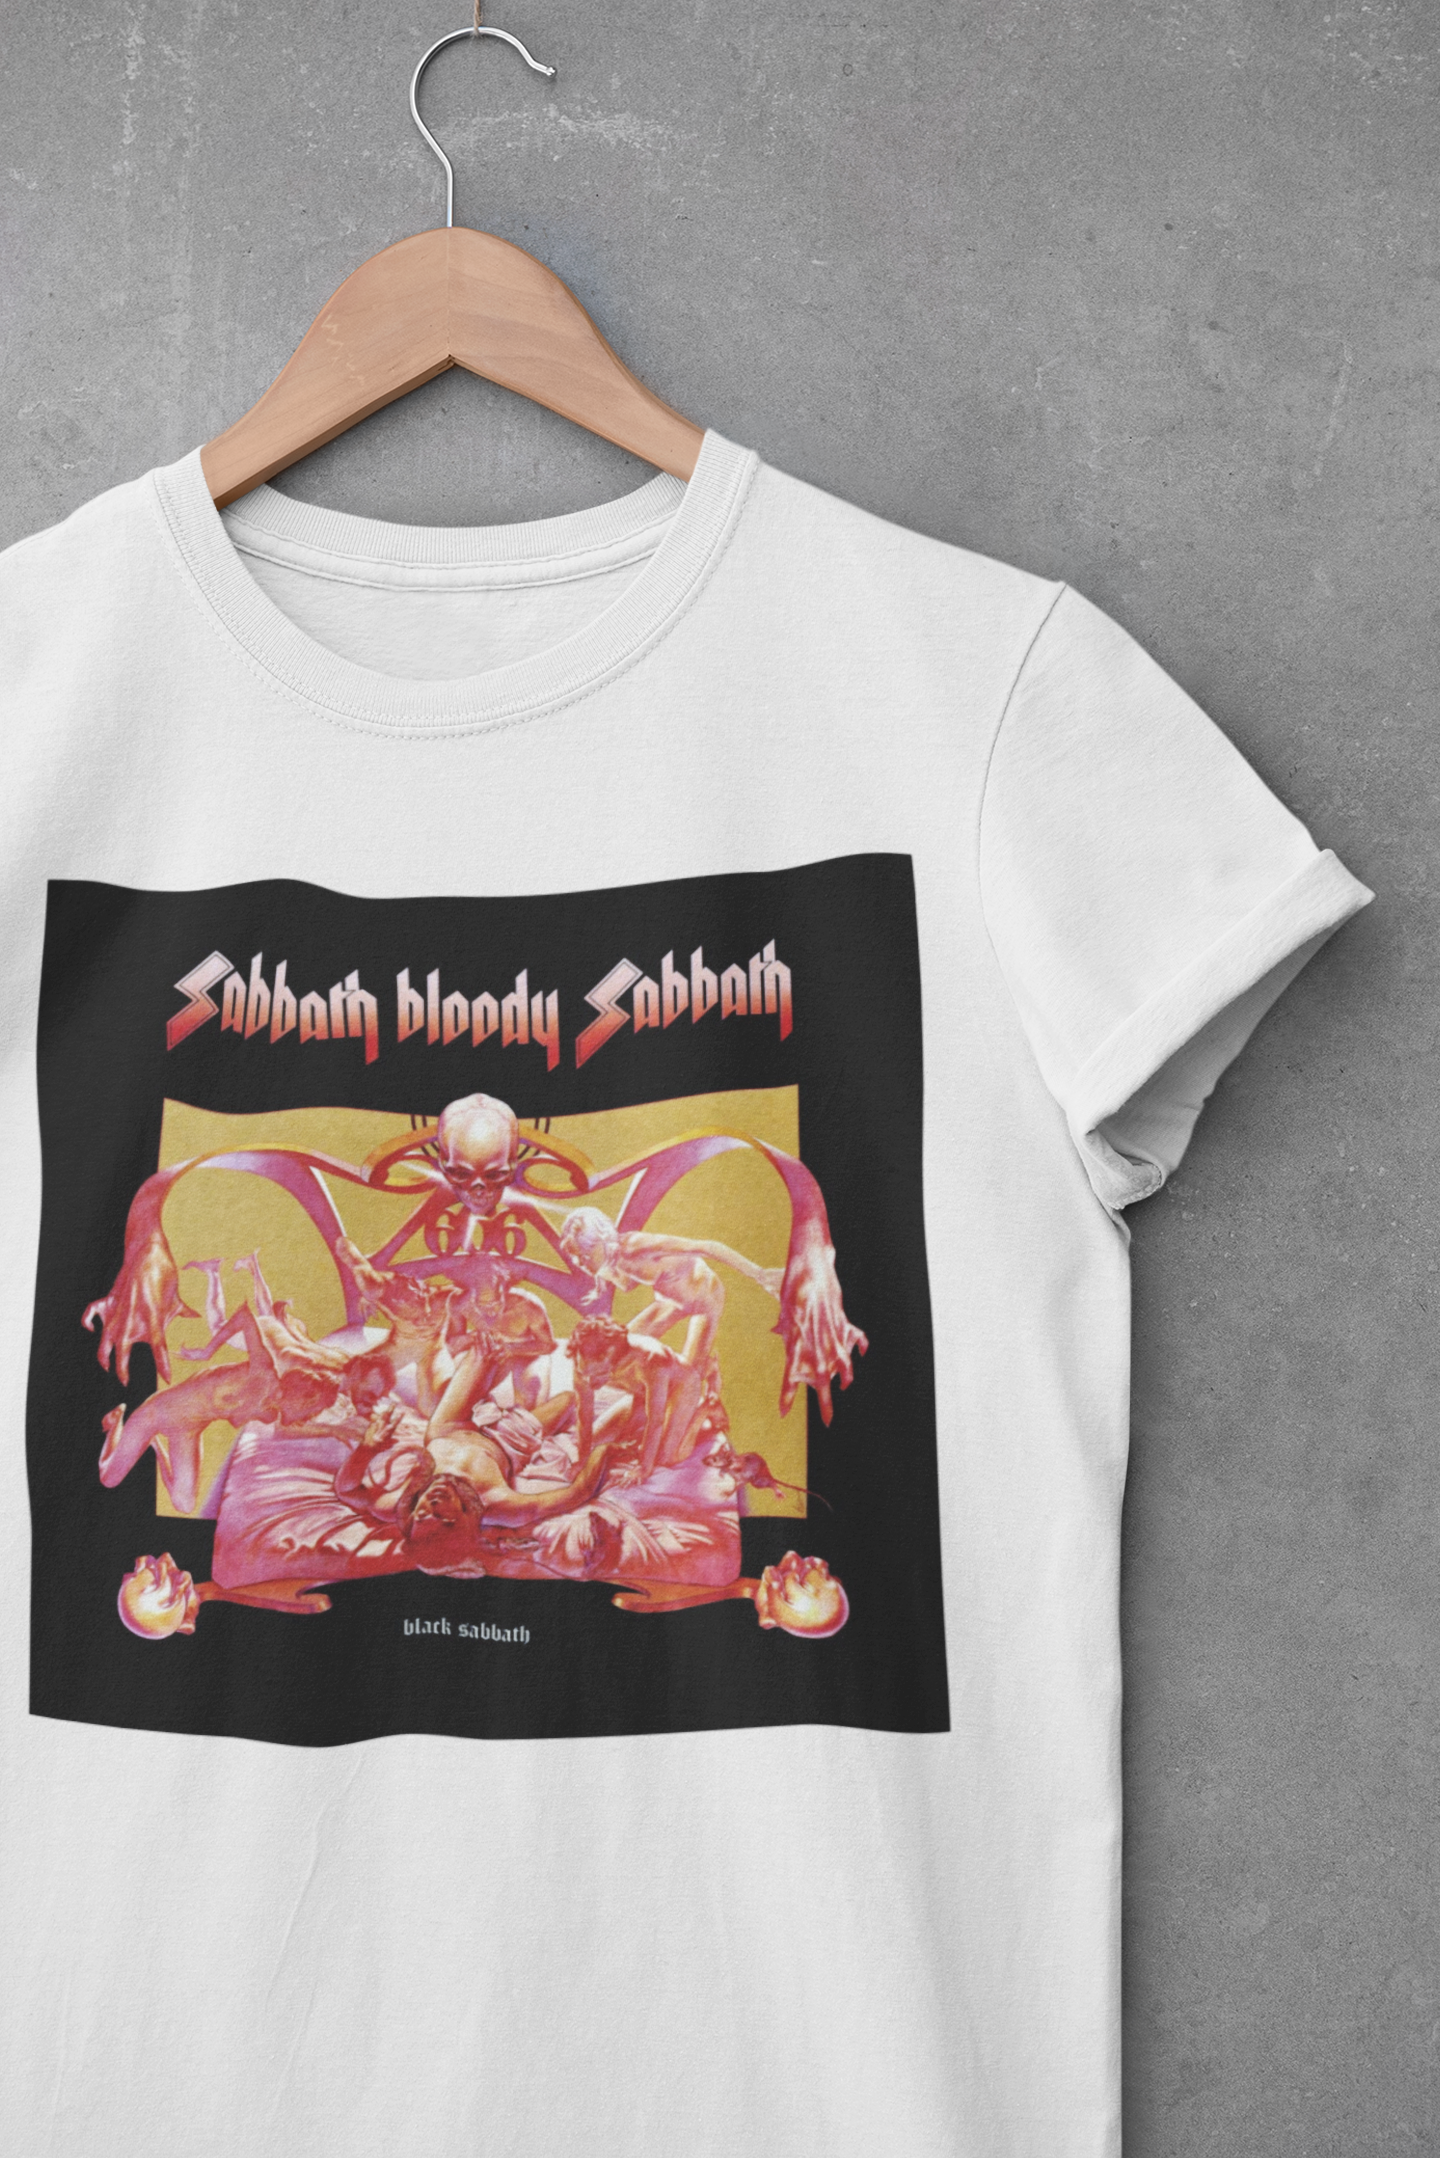 Camiseta "Sabbath Bloody Sabbath - Black Sabbath" - Álbum - Música